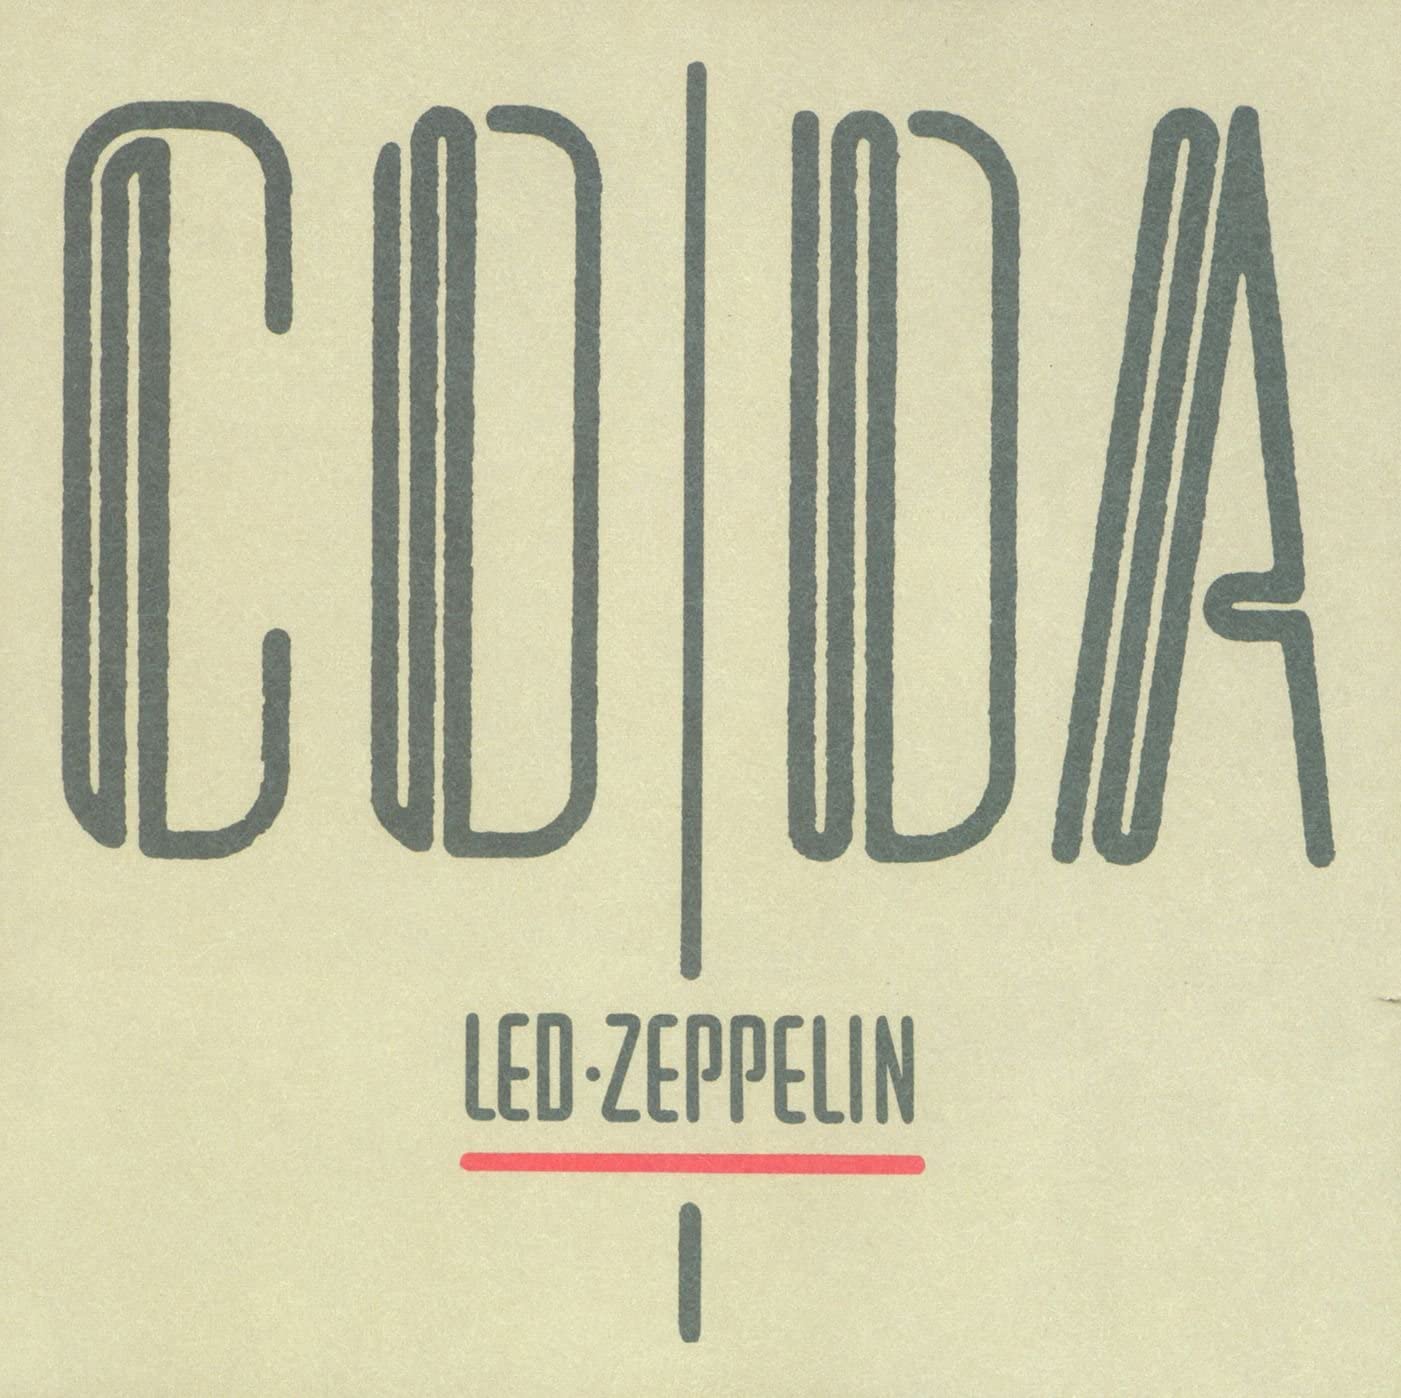 Coda | Led Zeppelin image0